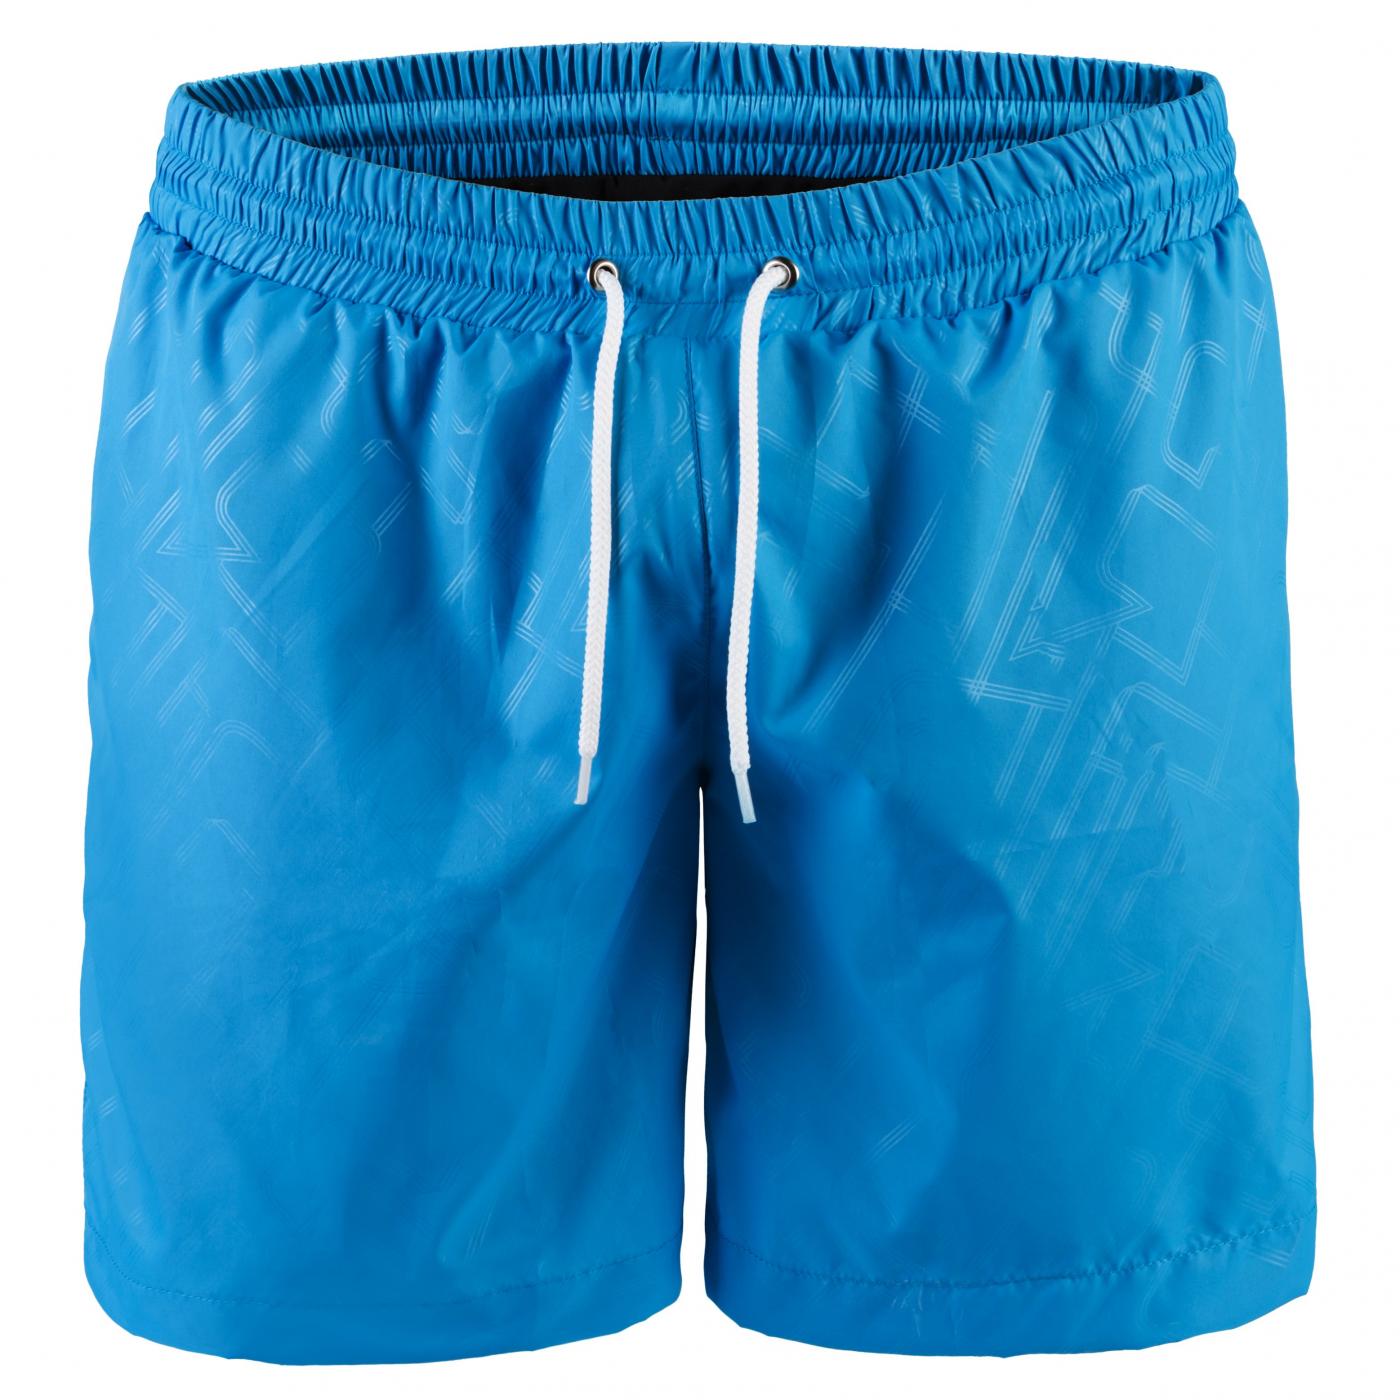 Мужские купальные шорты анатомические, голубой, принт MansSet